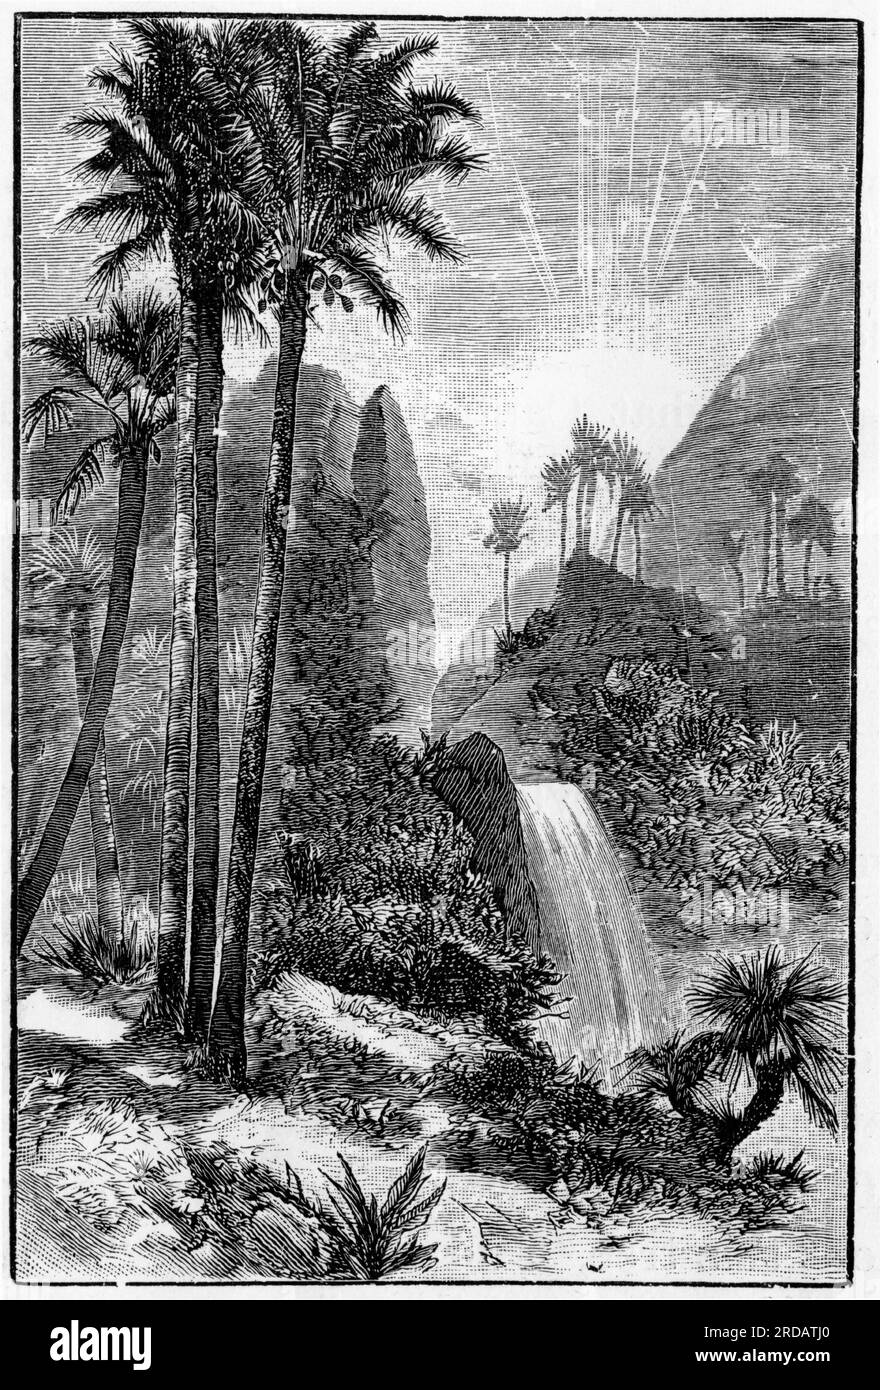 Incisione di alberi di cocco in un ambiente rurale asiatico, intorno al 1880 Foto Stock